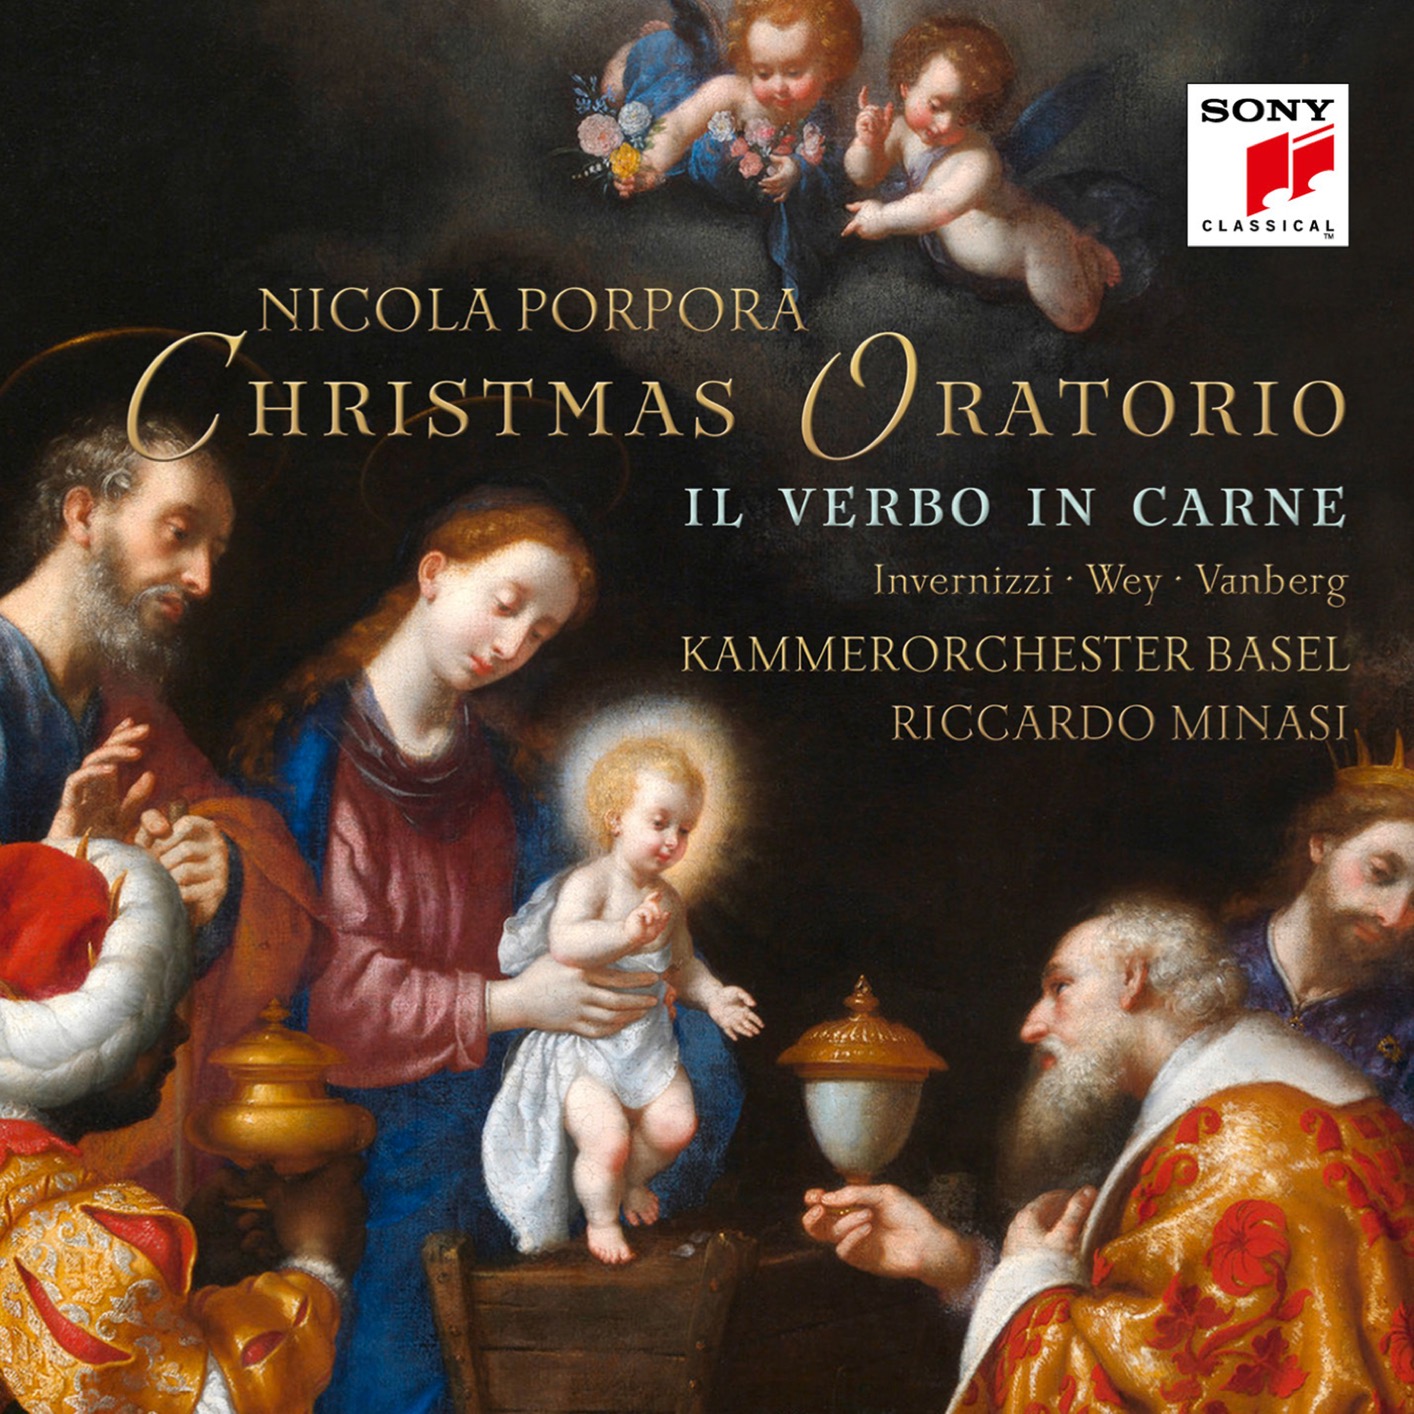 Kammerorchester Basel & Riccardo Minasi - Porpora: Il verbo in carne (Christmas Oratorio) (2018) [FLAC 24bit/48kHz]